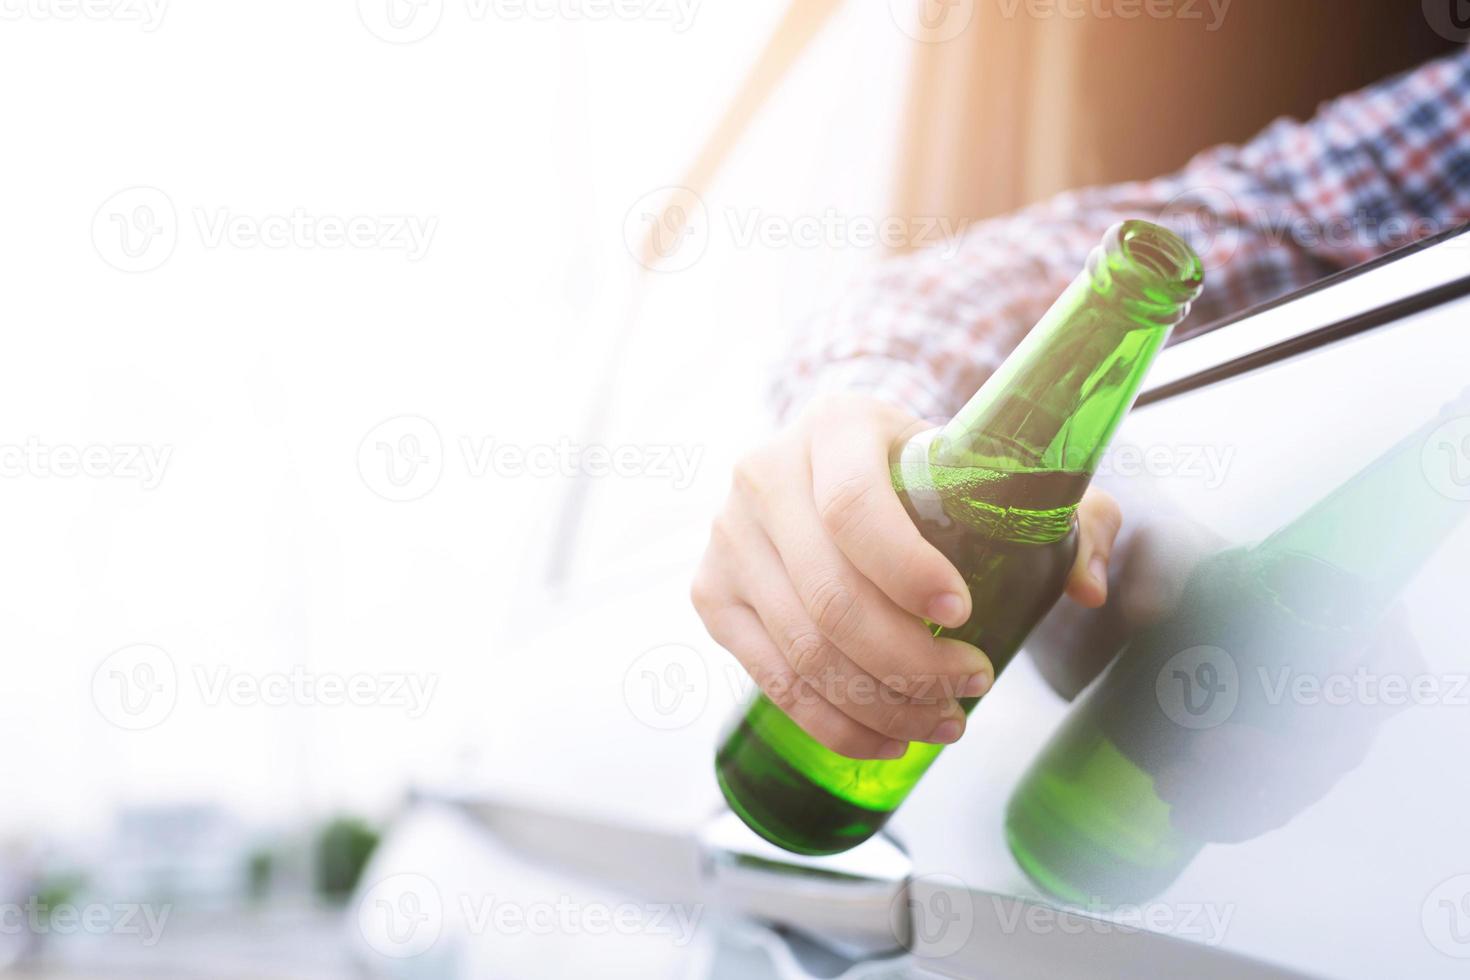 Feche a mão bêbado jovem enquanto dirigia um carro com uma garrafa de cerveja. não beba e dirija o conceito. dirigir embriagado o perigo pode ser a morte. foto